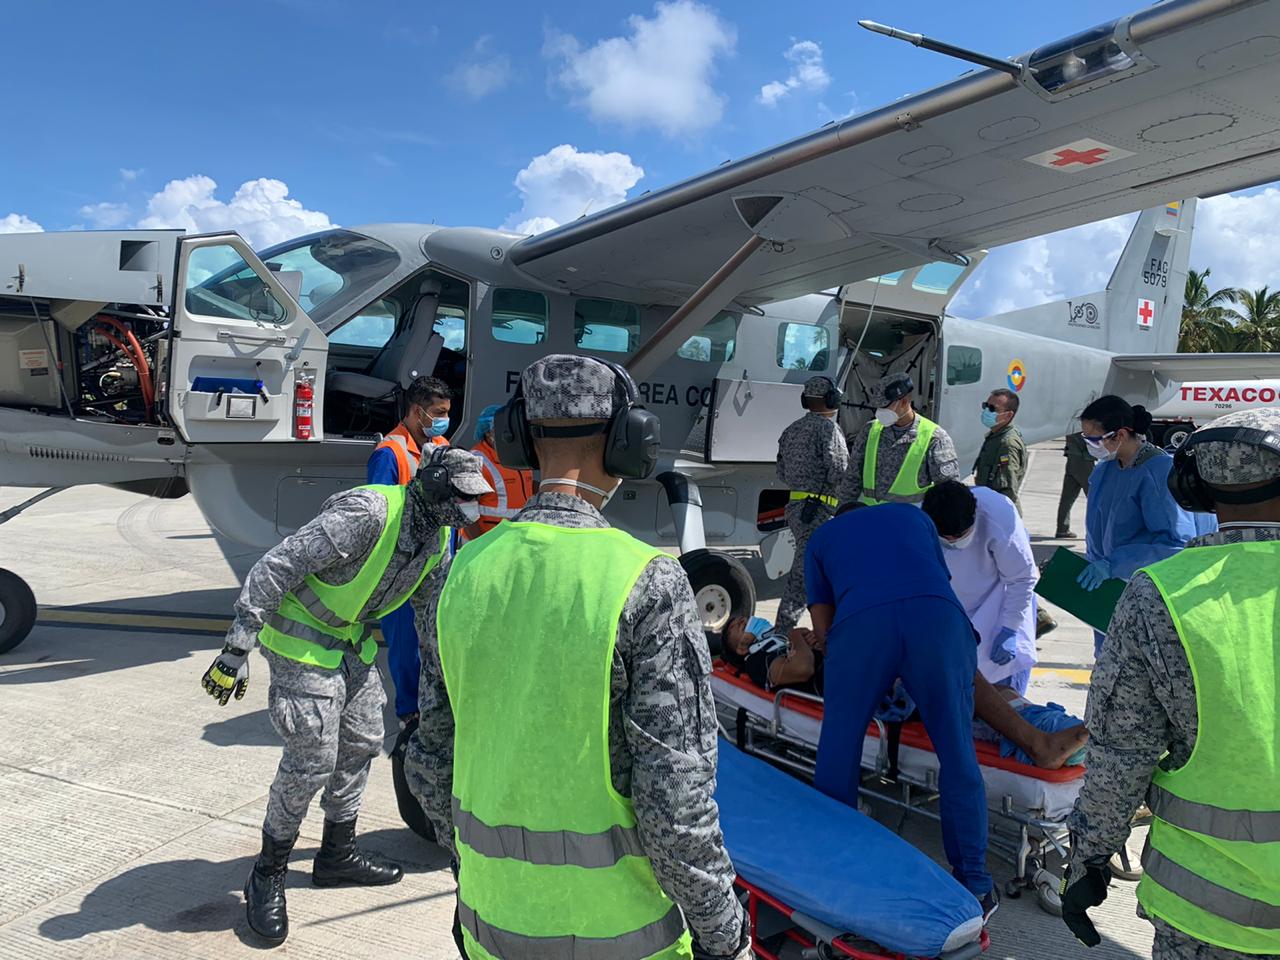 Incremento en operaciones de traslados aeromédicos y entrega de ayudas humanitarias por parte del GACAR